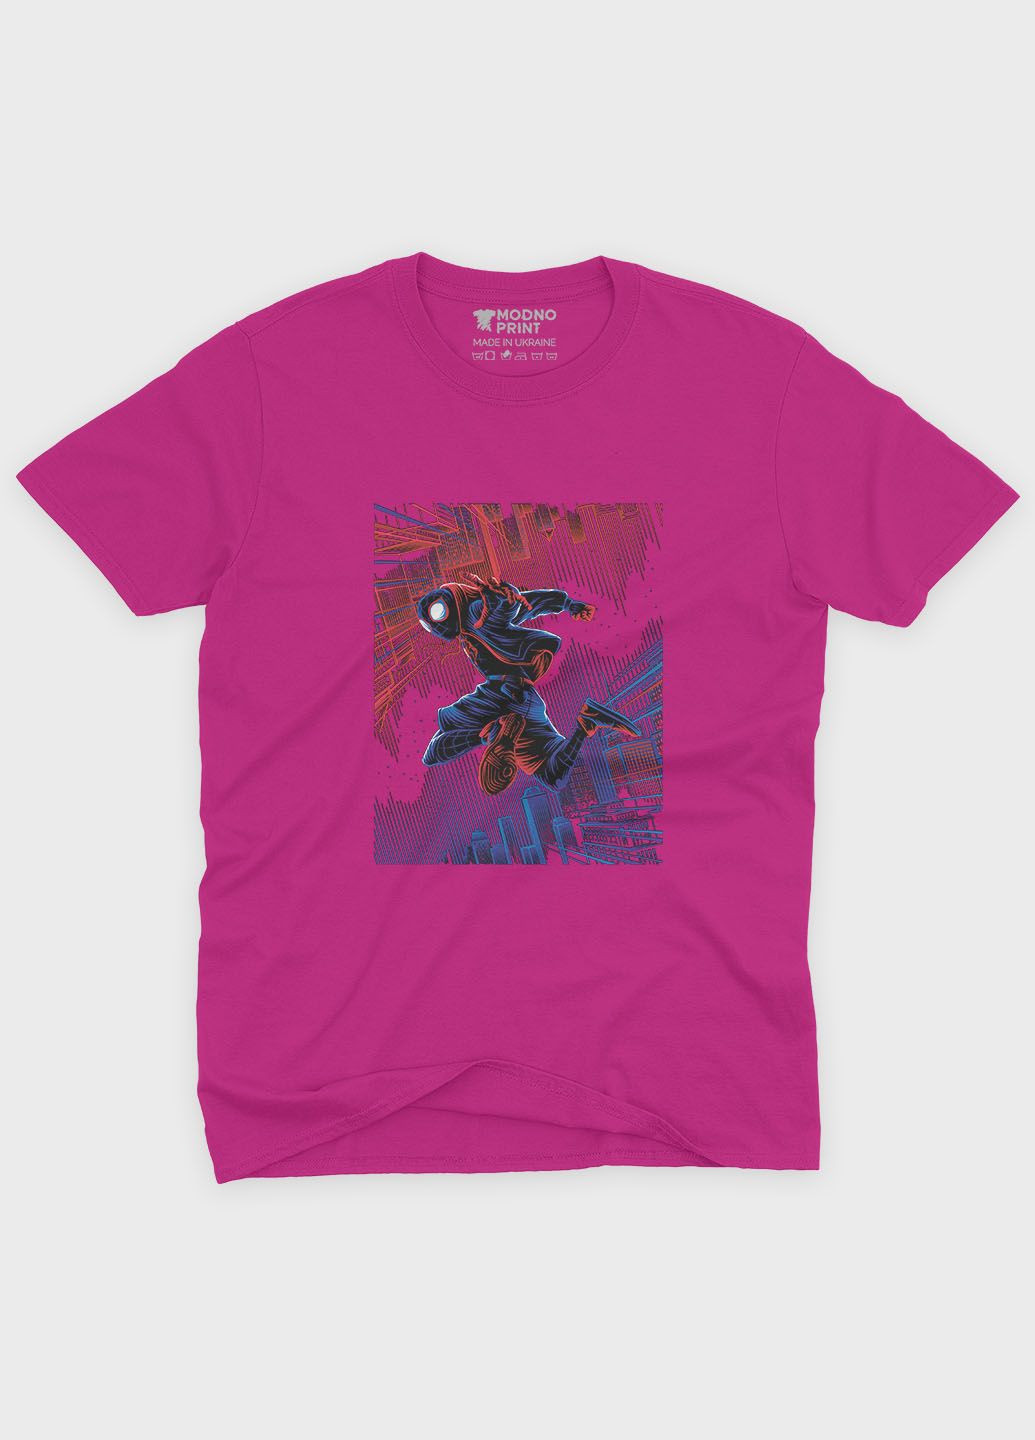 Розовая демисезонная футболка для девочки с принтом супергероя - человек-паук (ts001-1-fuxj-006-014-061-g) Modno